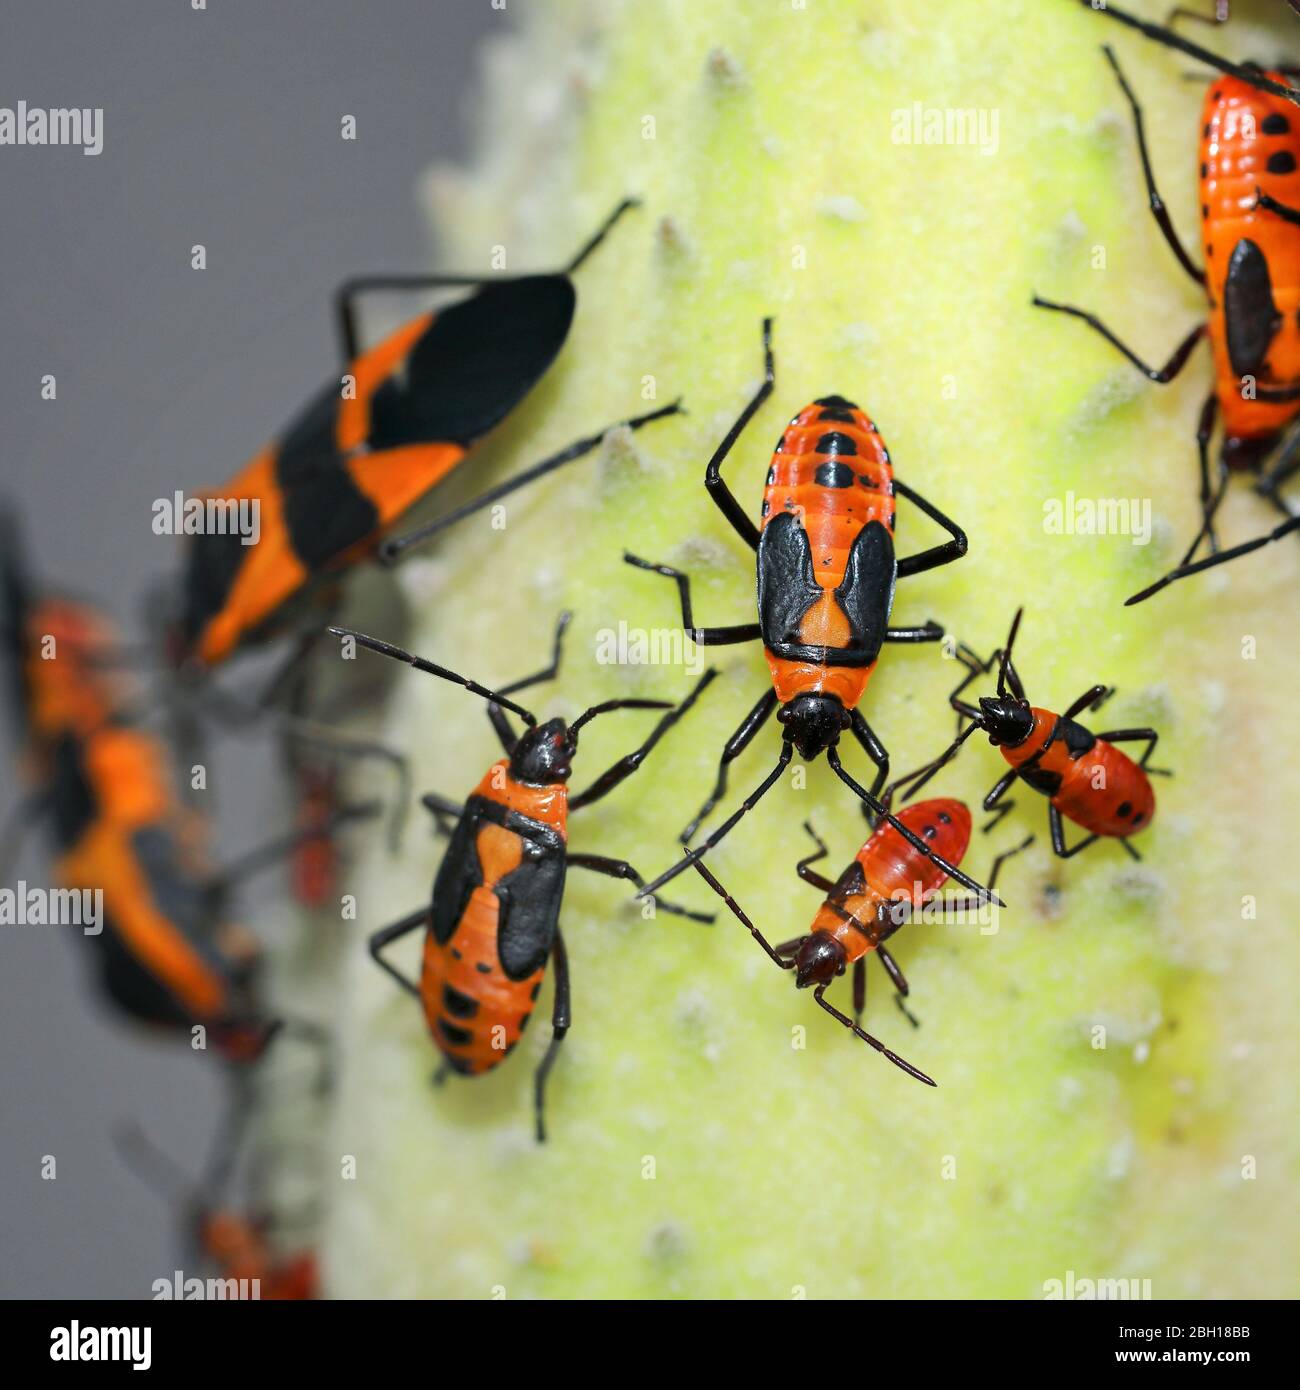 Insectos rojos y equipos de tinción, insectos pirrhocoridos, pirrhocores (Pyrrhocoridae), imagos y larvas en una hoja, Canadá, Ontario, Parque Nacional Point Pelee Foto de stock